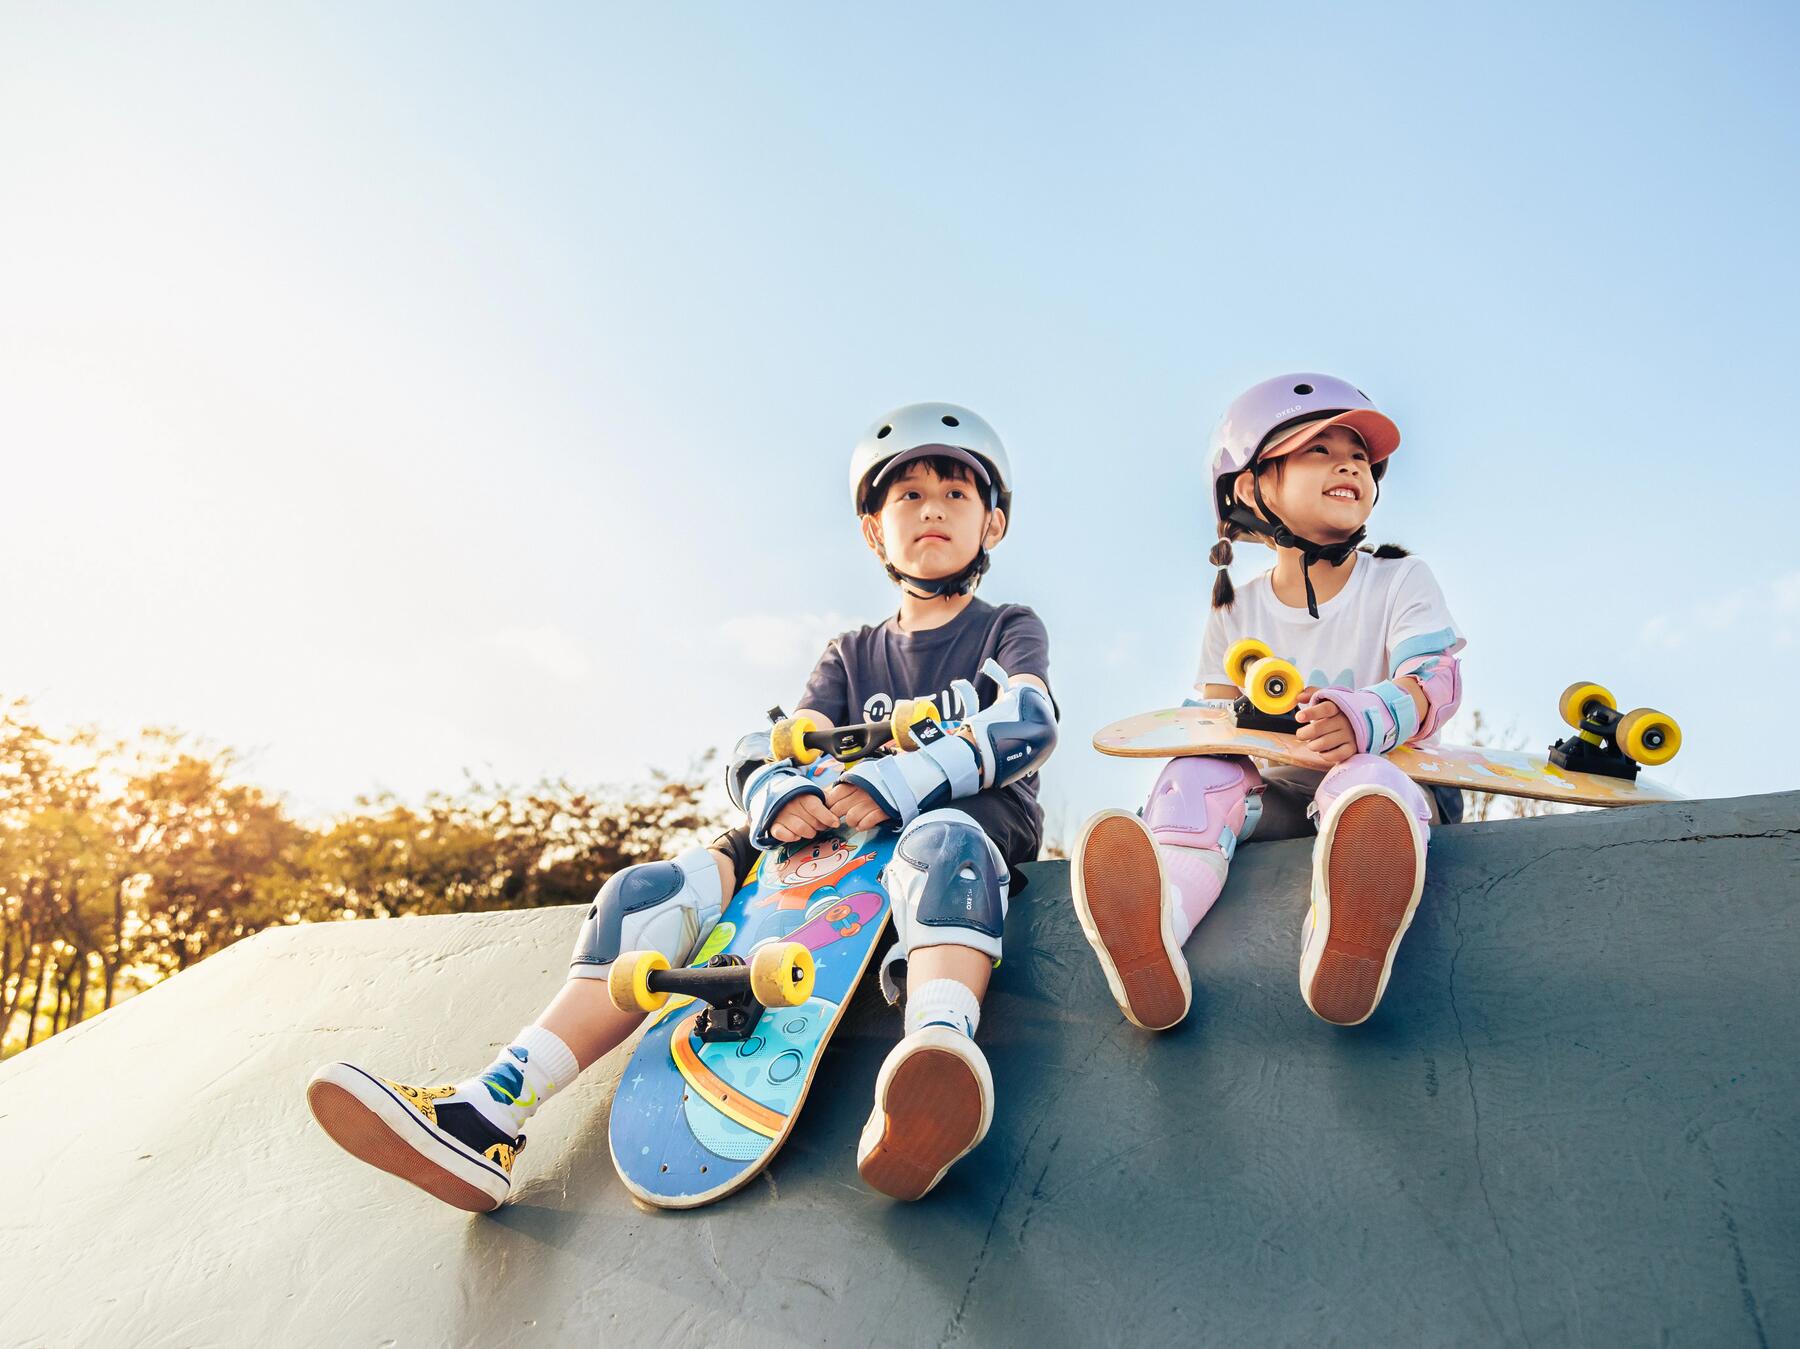 Dziecii z deskorolkami siedzące na skateparku